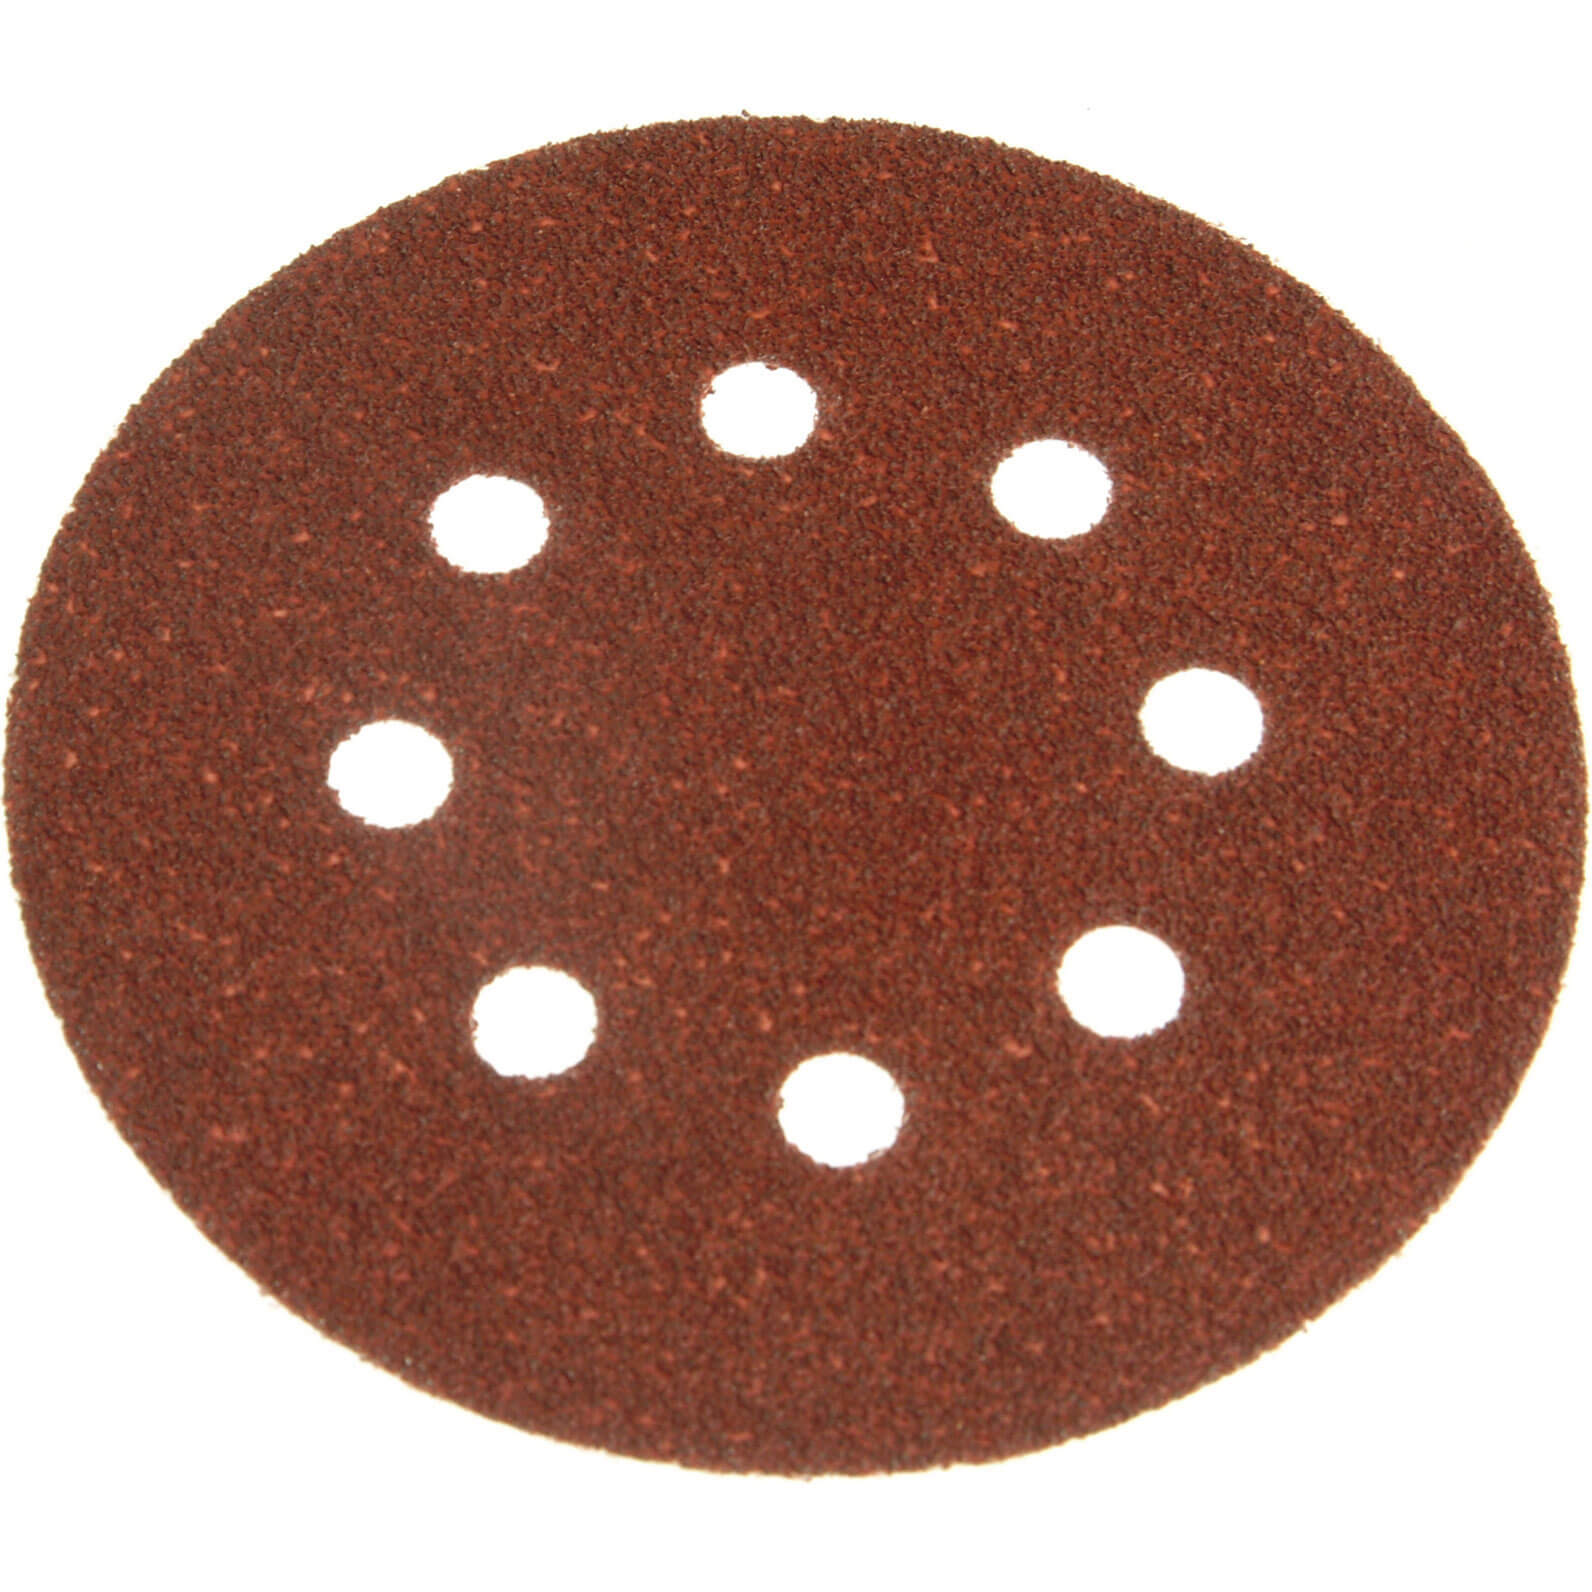 Black & Decker X32182 Perf Sand Discs (5) Fine 125mm